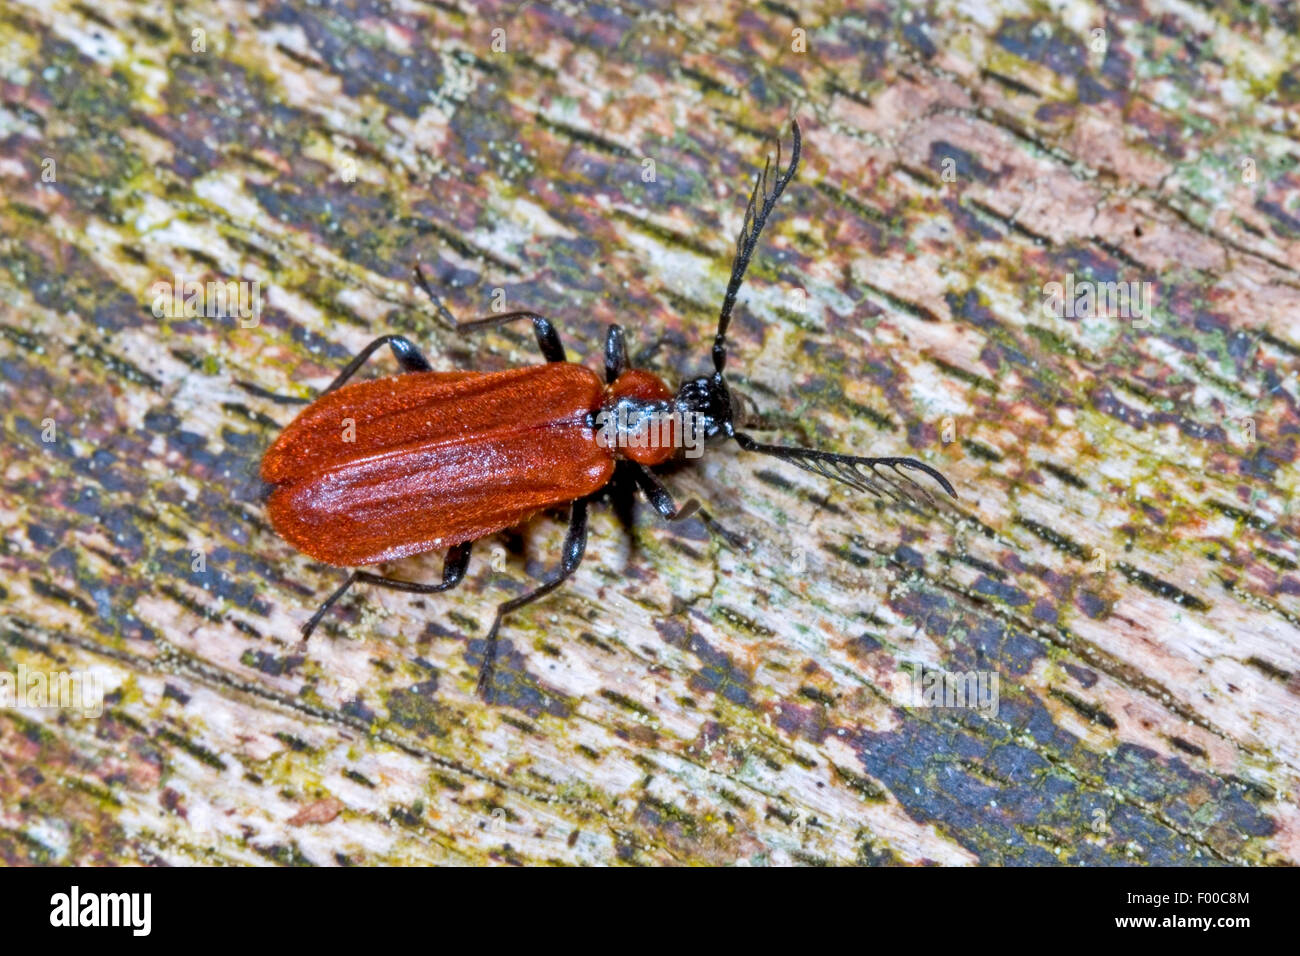 Orange-coloured fire beetle (Schizotus pectinicornis), on bark, Germany Stock Photo